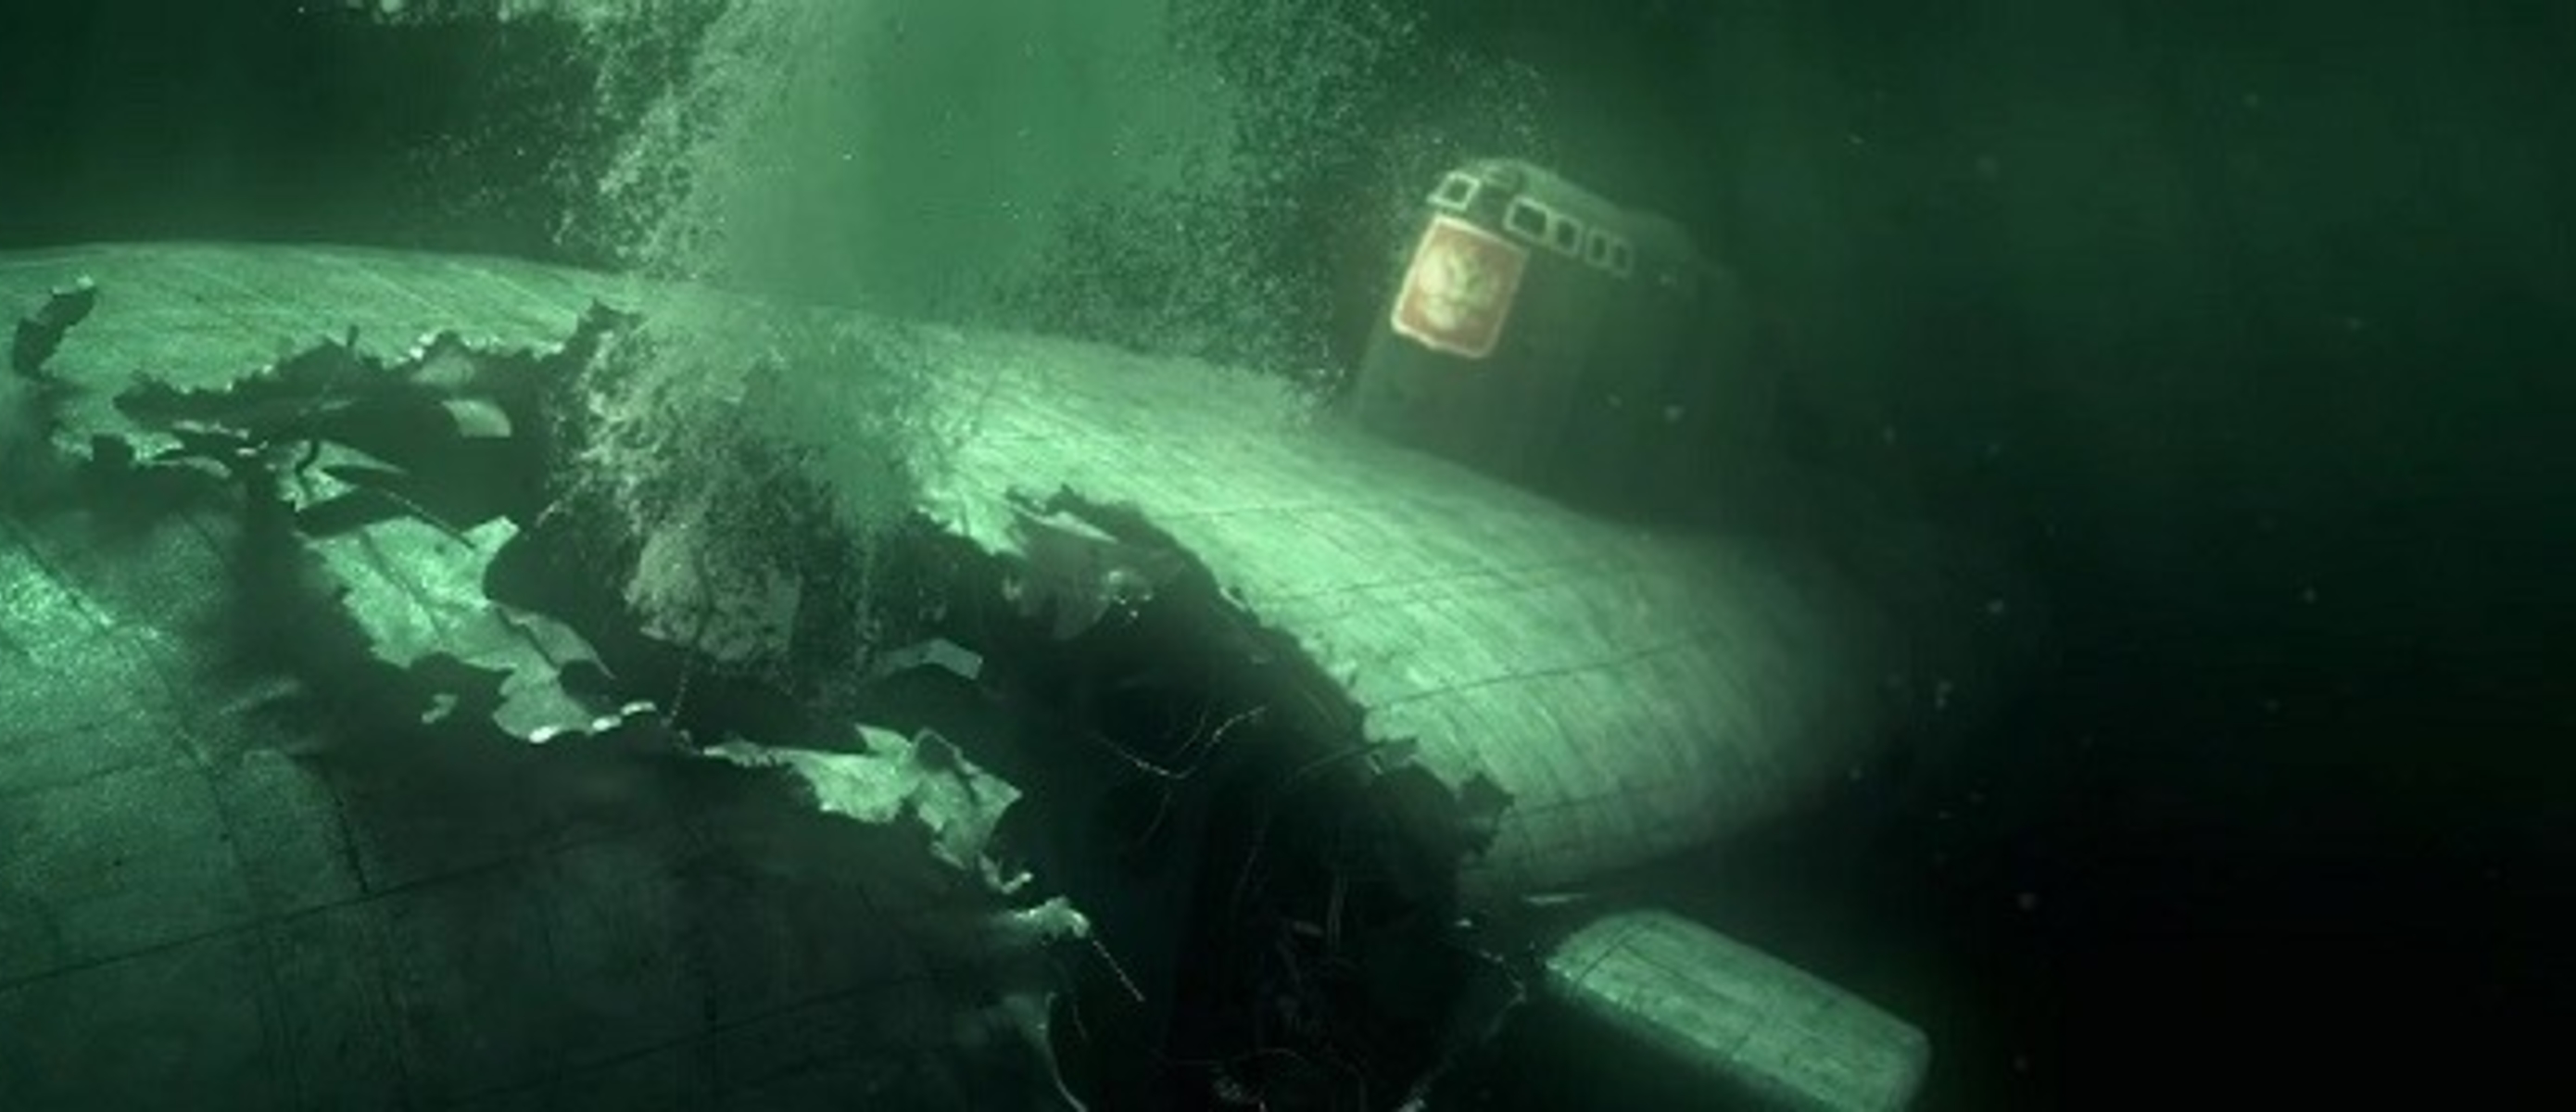 Торпеды курска. Подводная лодка к-141 «Курск». Курск подводная лодка катастрофа. Курск 141 атомная подводная лодка. К-141 «Курск».